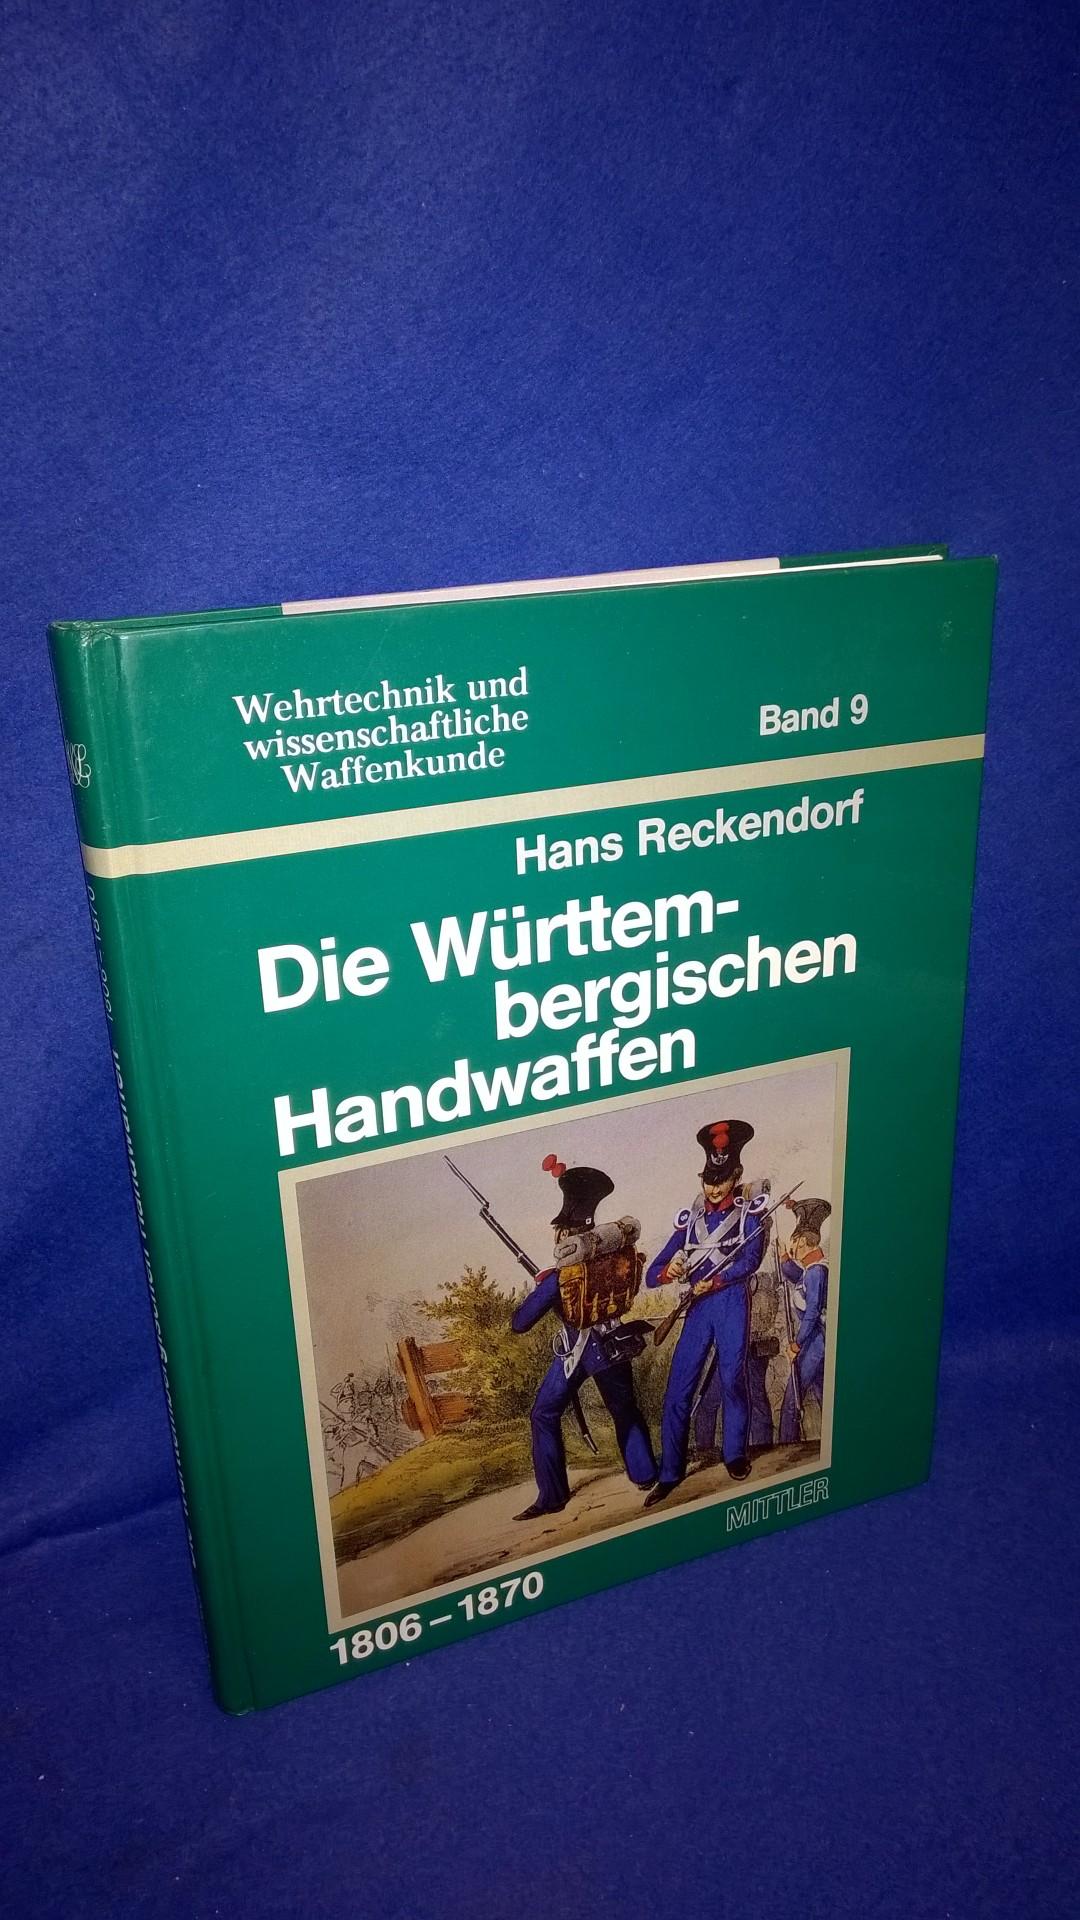 Wehrtechnik und wissenschaftliche Waffenkunde Band 9. Die Württembergischen Handwaffen 1806-1870. 